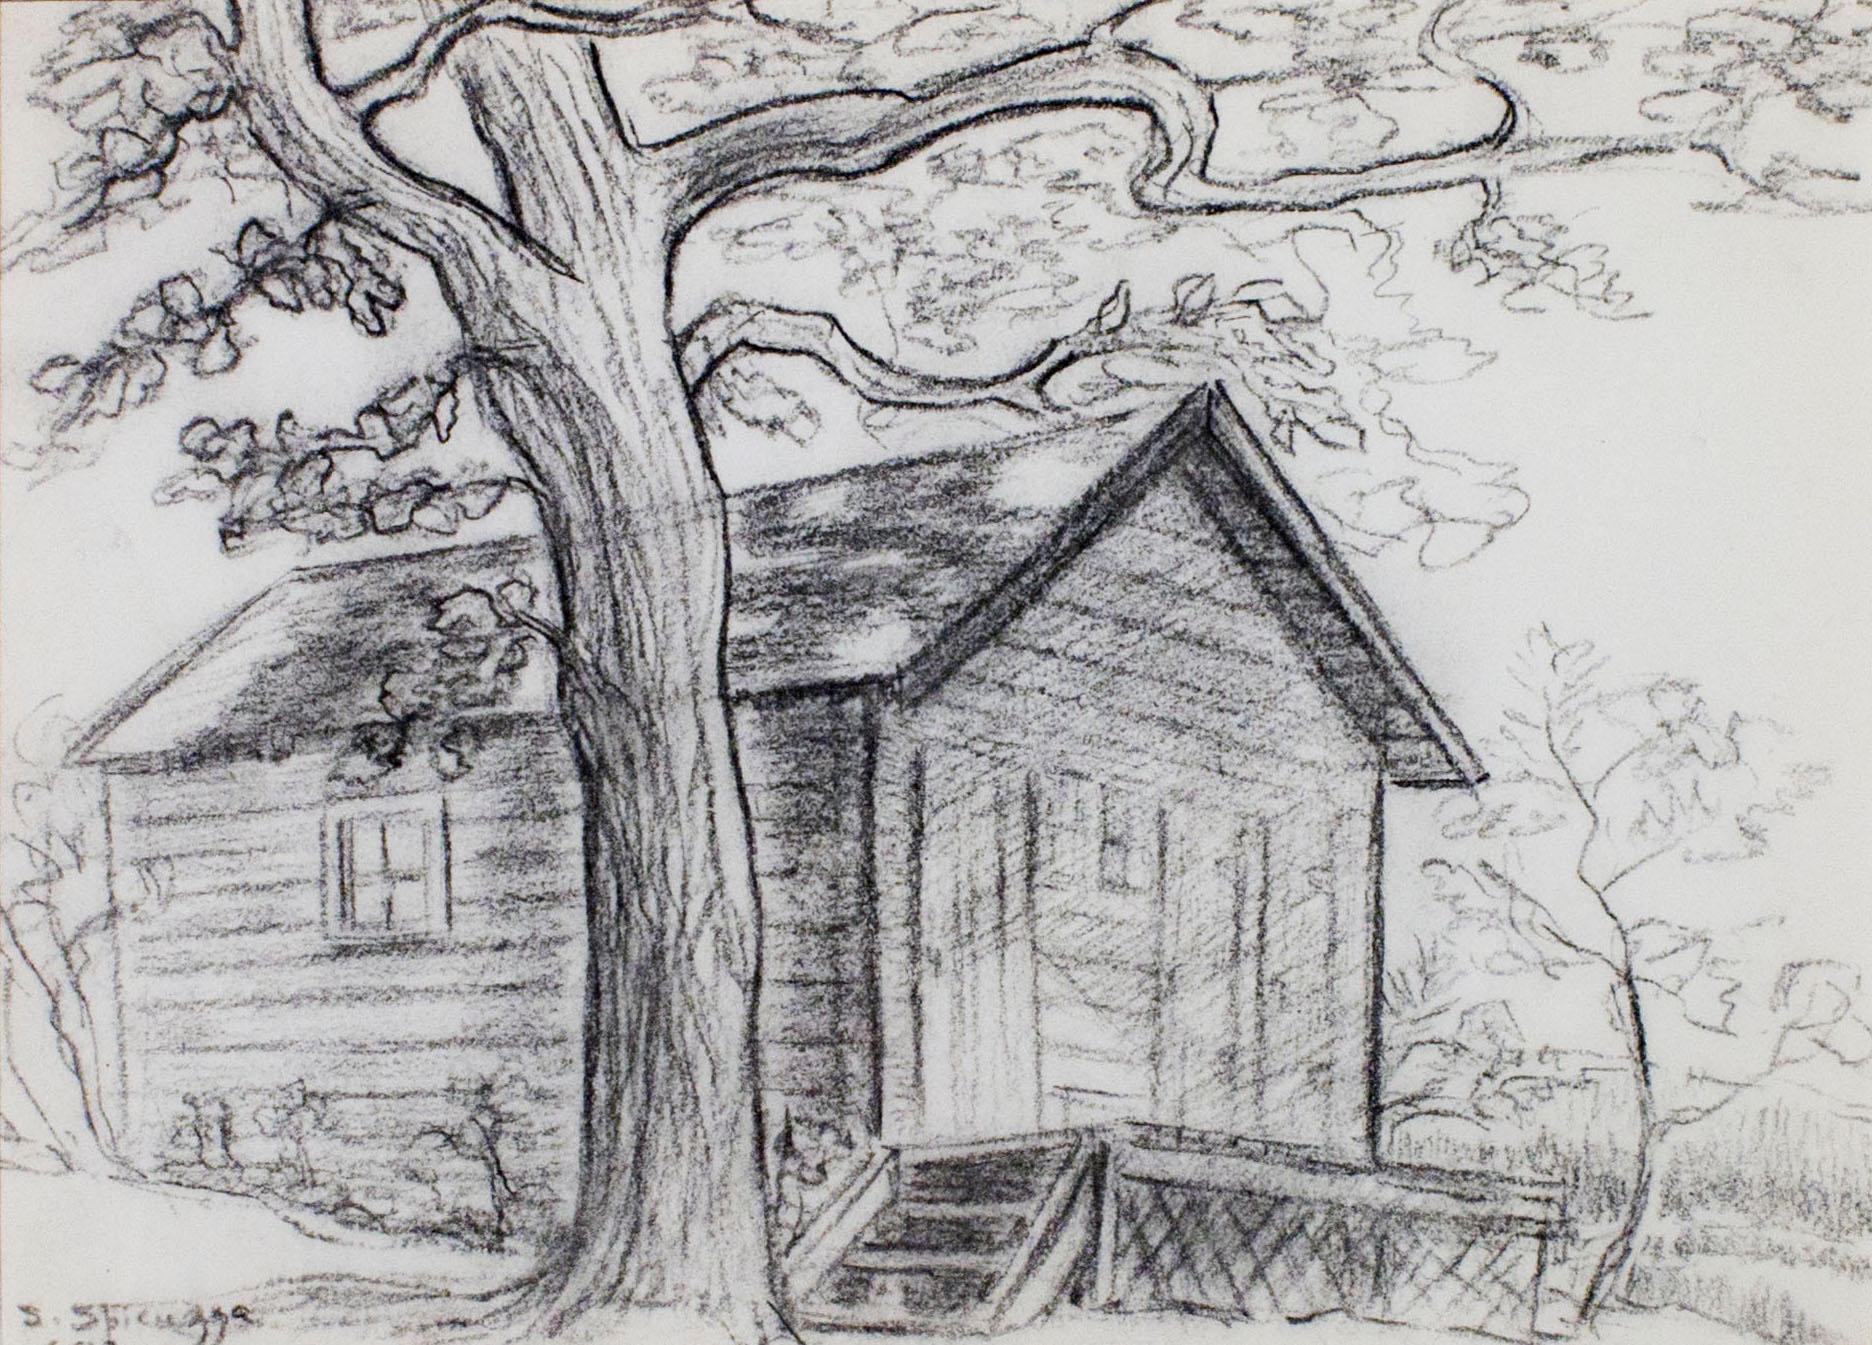 Dans ce dessin, Sylvia Spicuzza présente au spectateur une cabane au bord du lac, à l'ombre d'un arbre massif. Ce dessin rappelle l'œuvre de son père Francesco, plus connu pour ses paysages de style impressionniste. 

12 x 9 pouces, œuvre